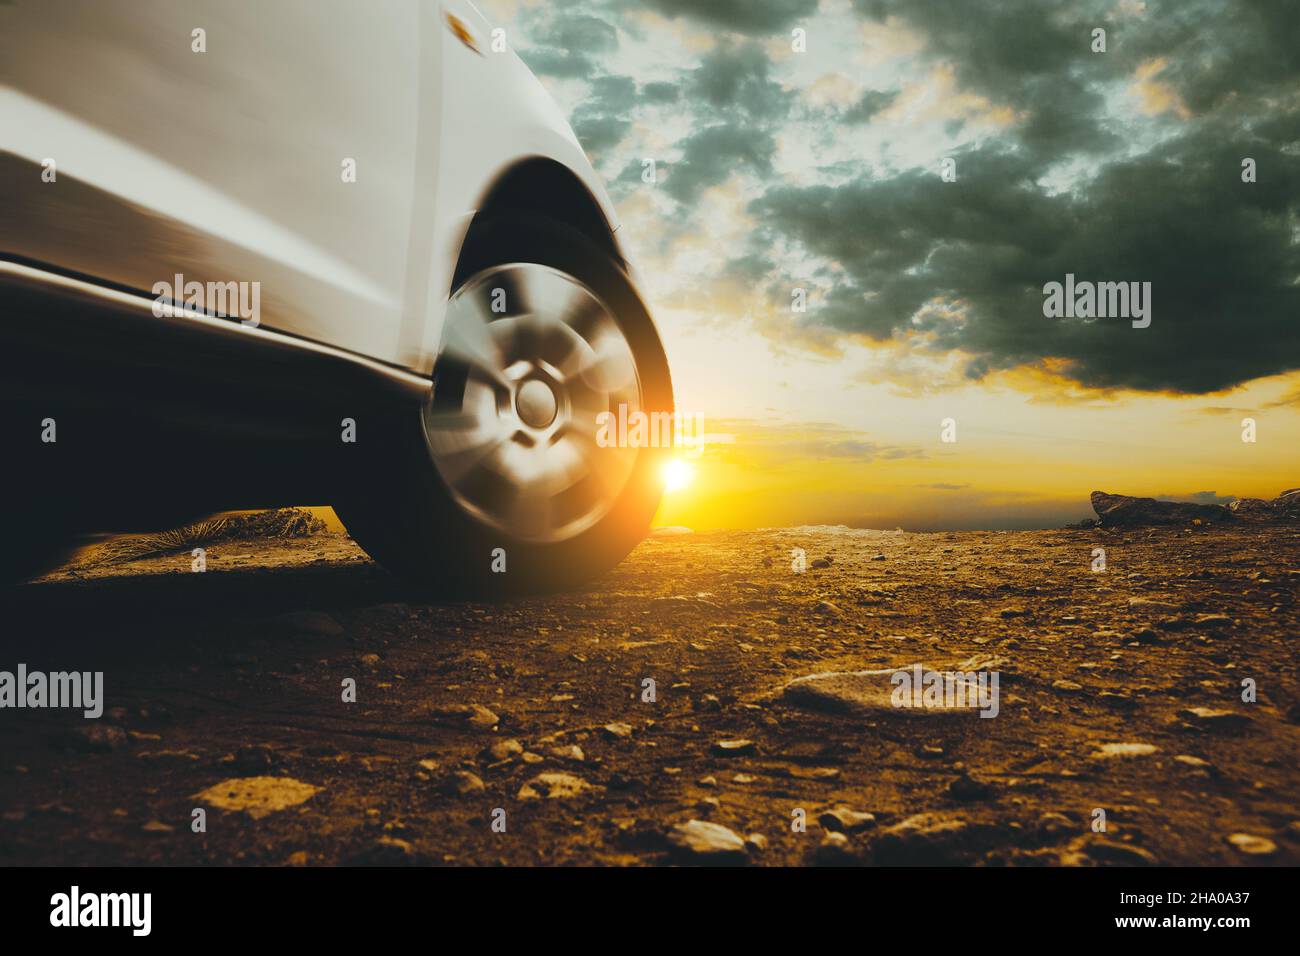 Immagine chiusa di ruote e pneumatici per auto a terra e cielo al tramonto. Viaggio in auto e avventura. Foto Stock